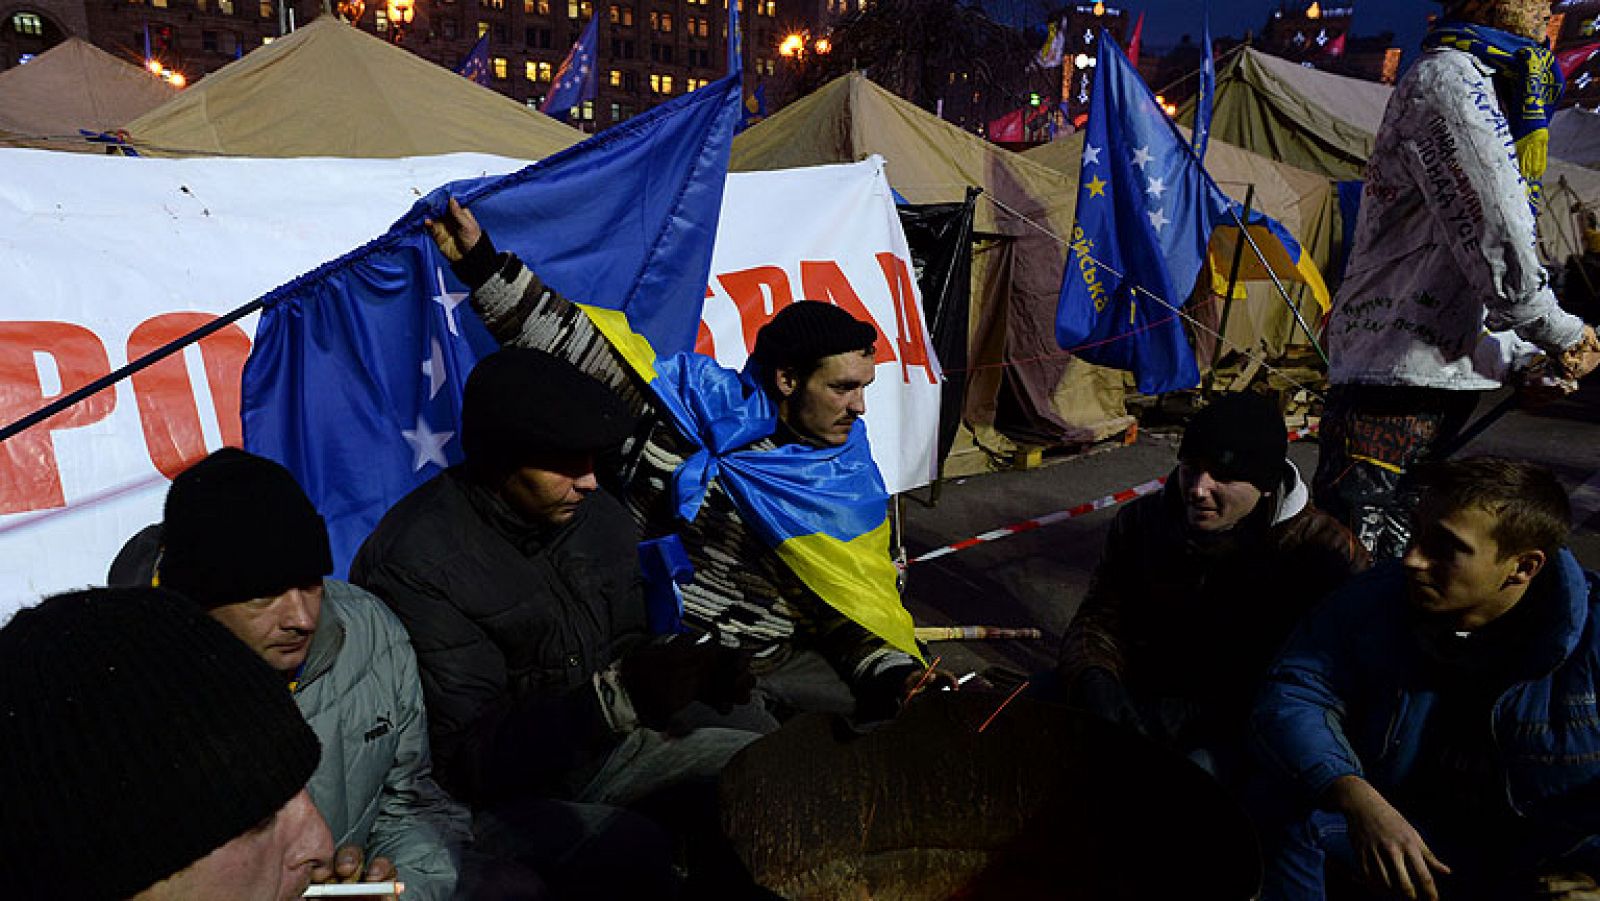  Ucrania lleva más de una semana al borde de la revolución, pero su presidente, Víctor Yanukovich, continúa de visita en China. Allí busca ayuda económica, entre otras cosas, para pagar las facturas del gas ruso, pero no faltan las visitas turistícas. En su ausencia, el centro de Kiev sigue tomado por la oposición. 